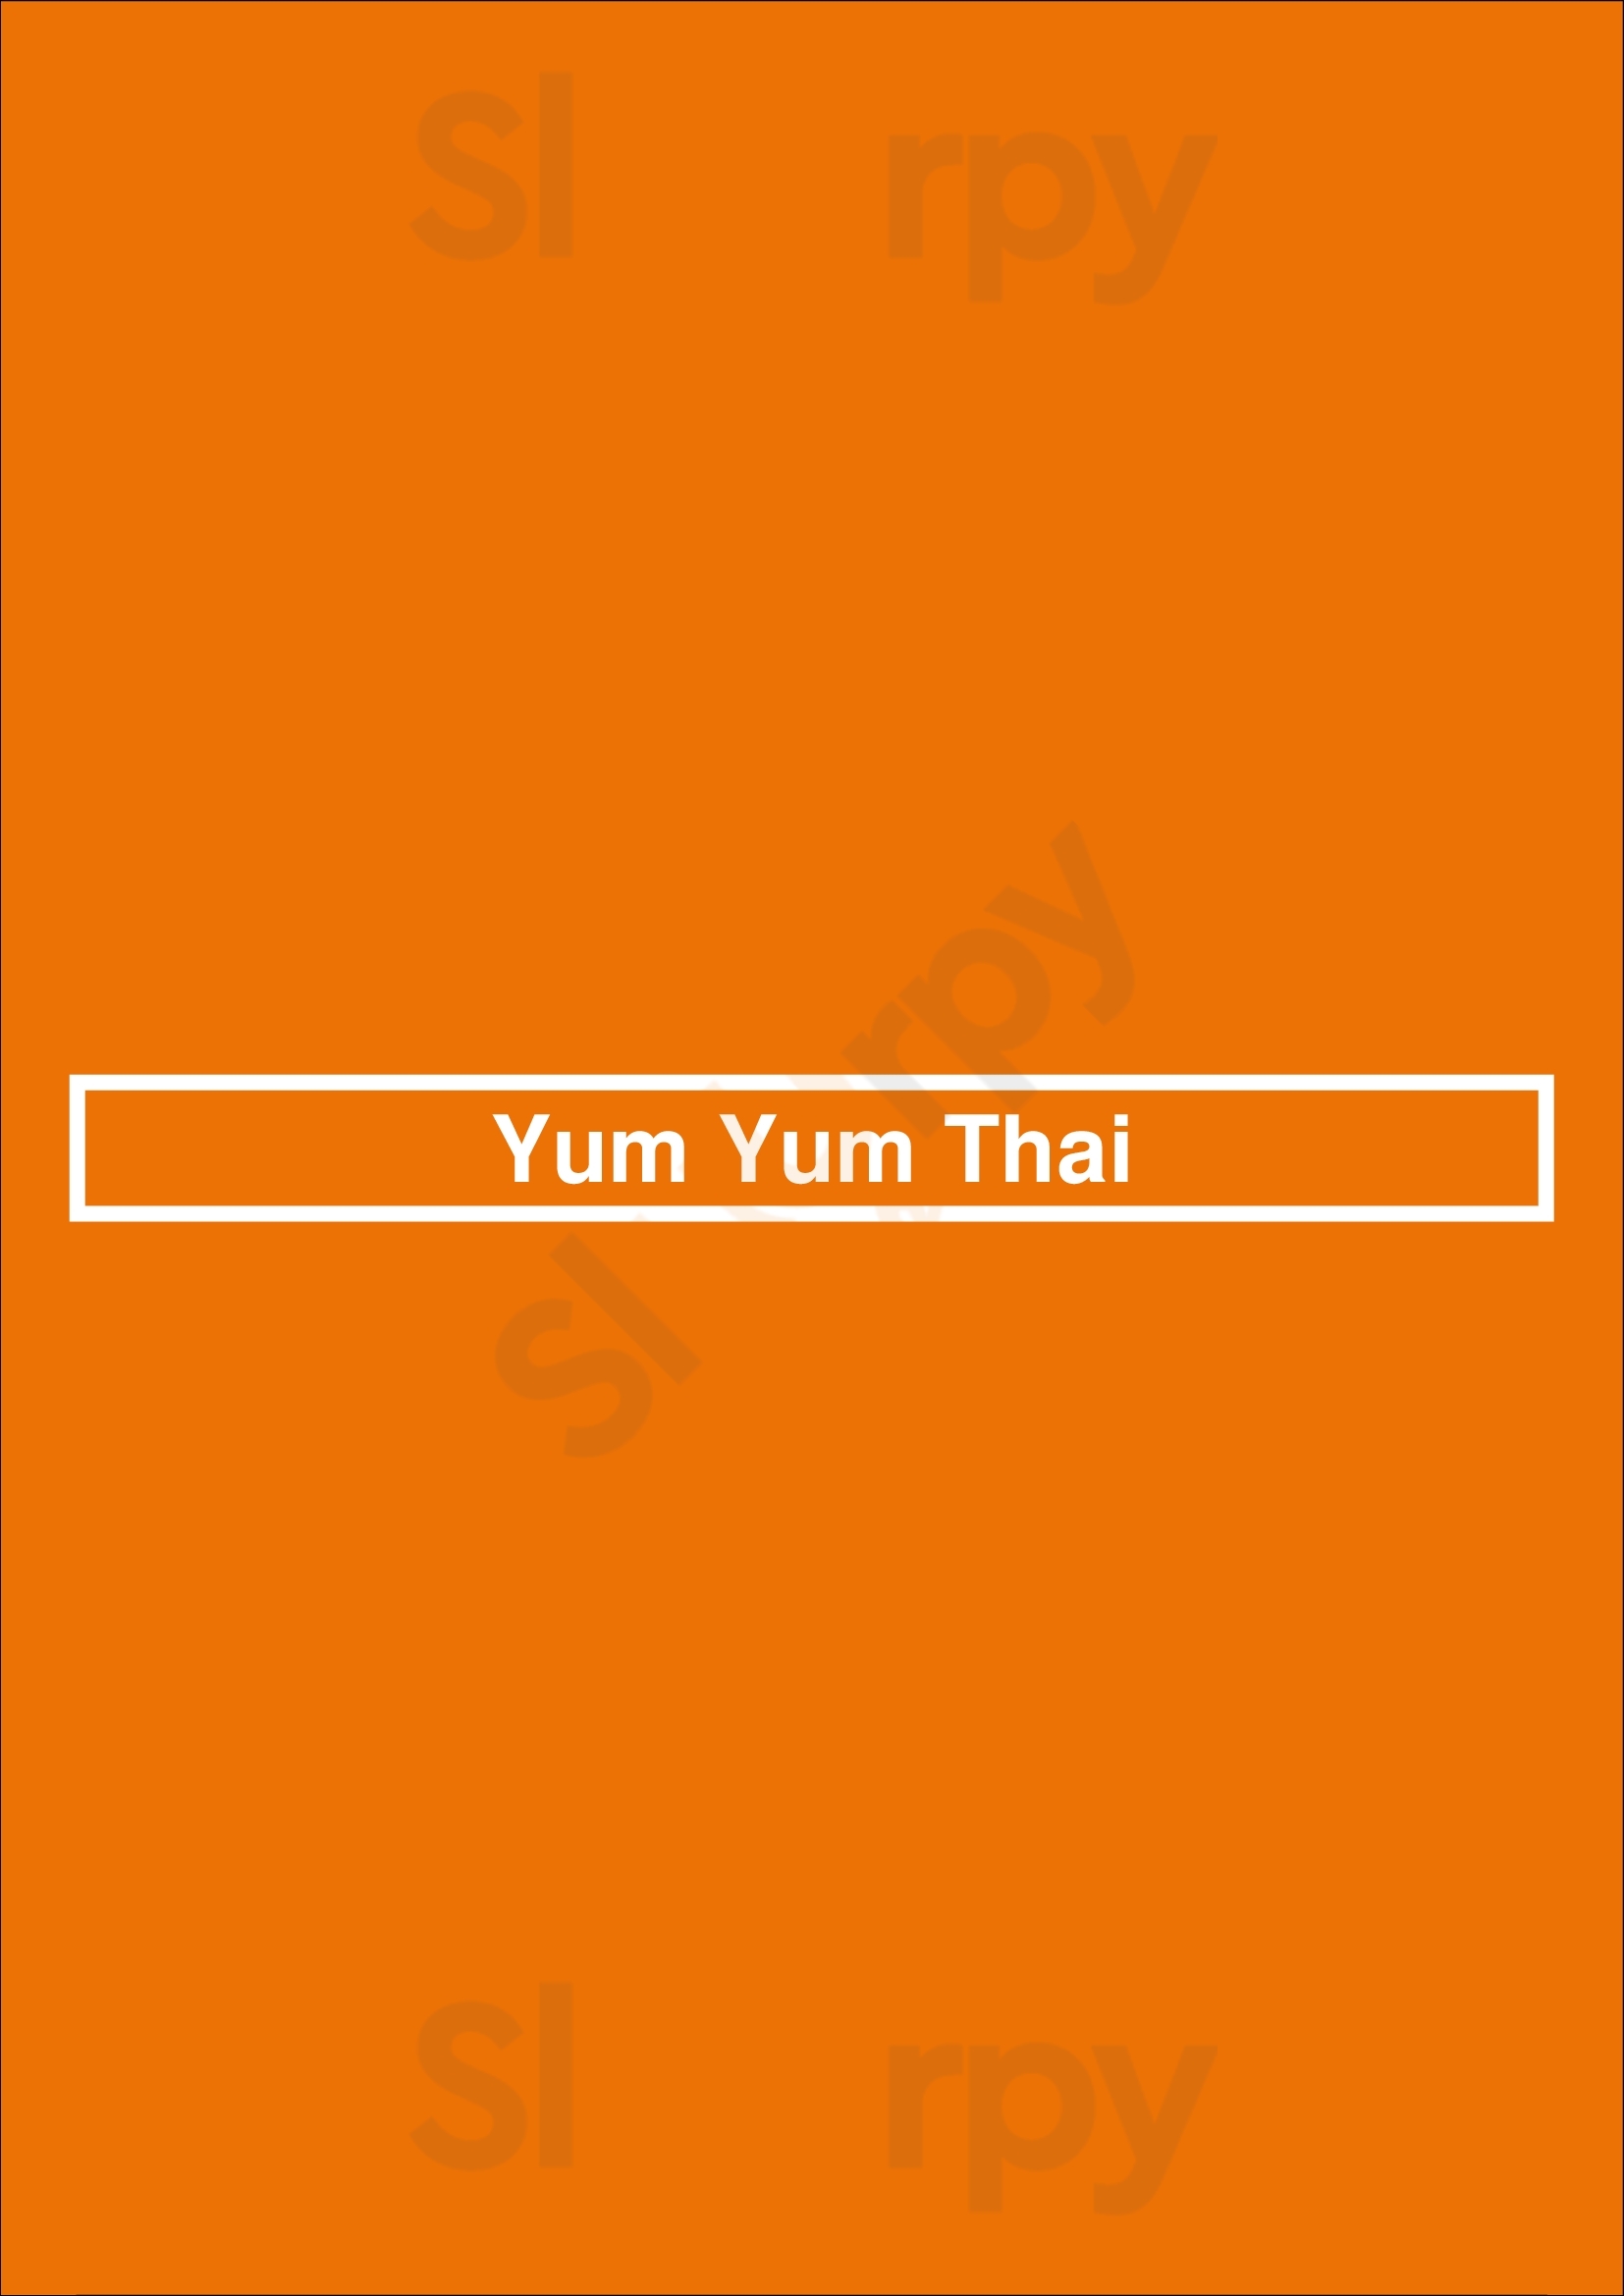 Yum Yum Thai Amsterdam Menu - 1